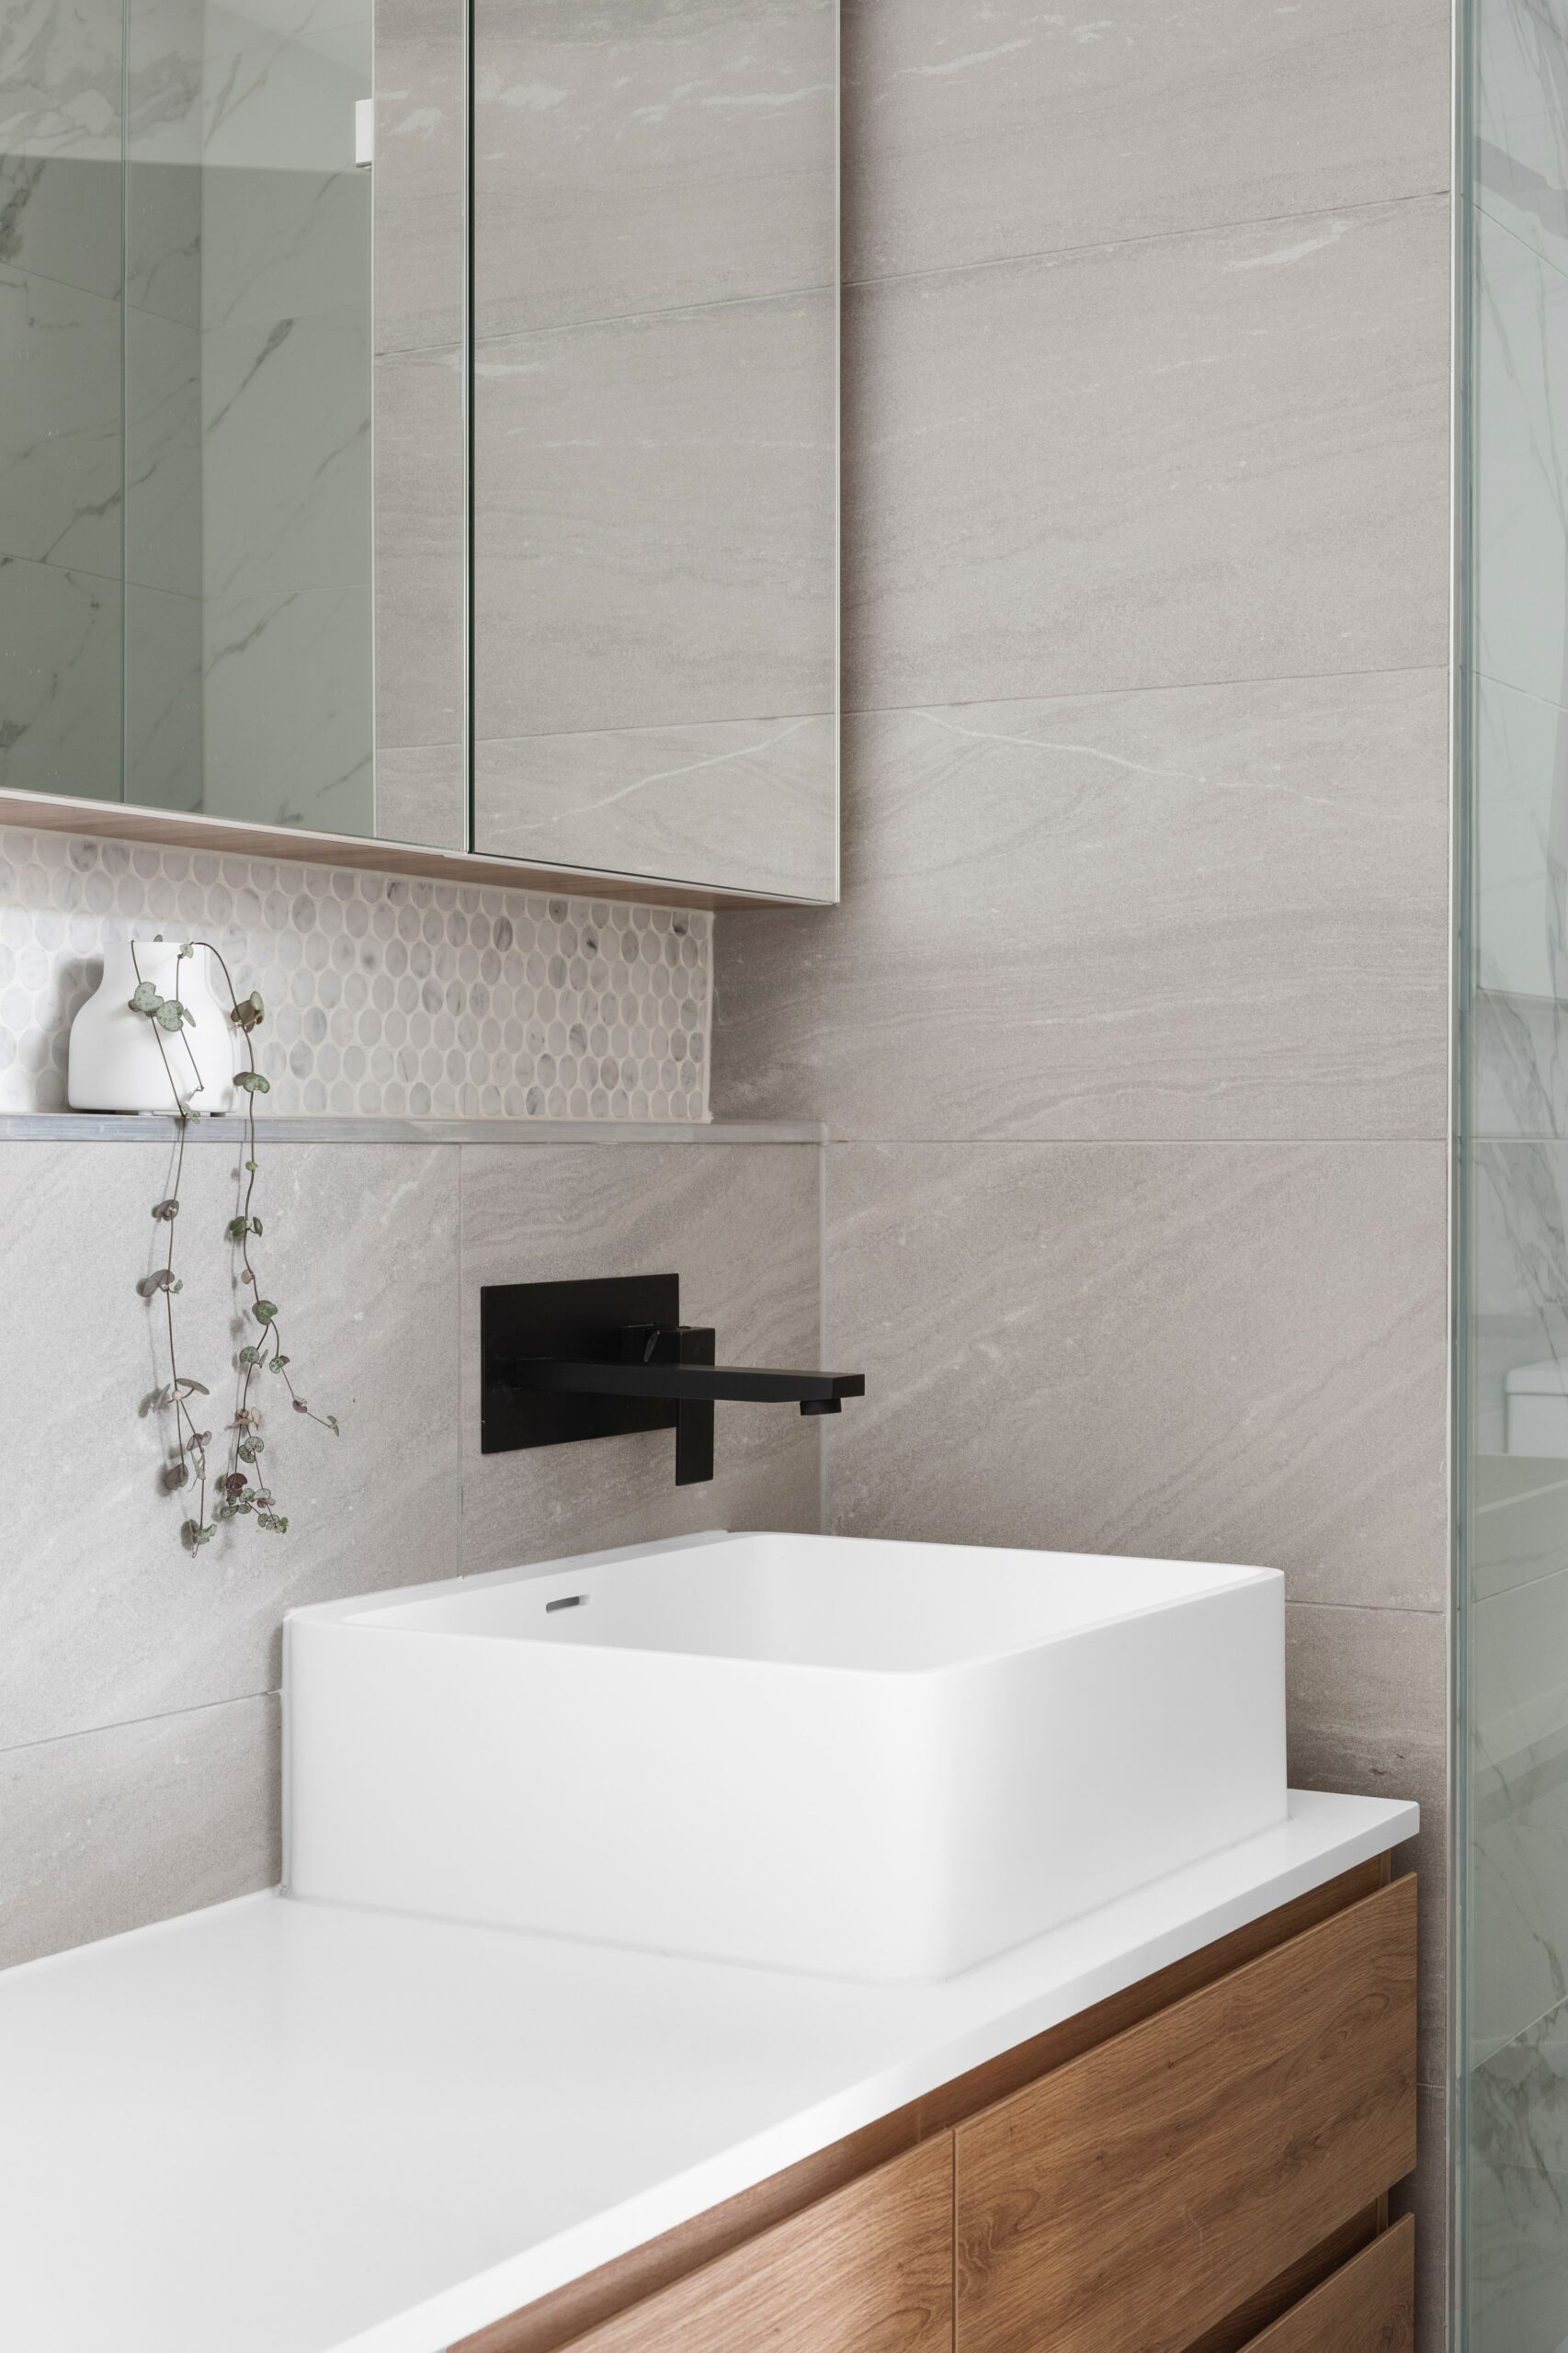 bathroom granite and tile backsplash porcelain sink modern